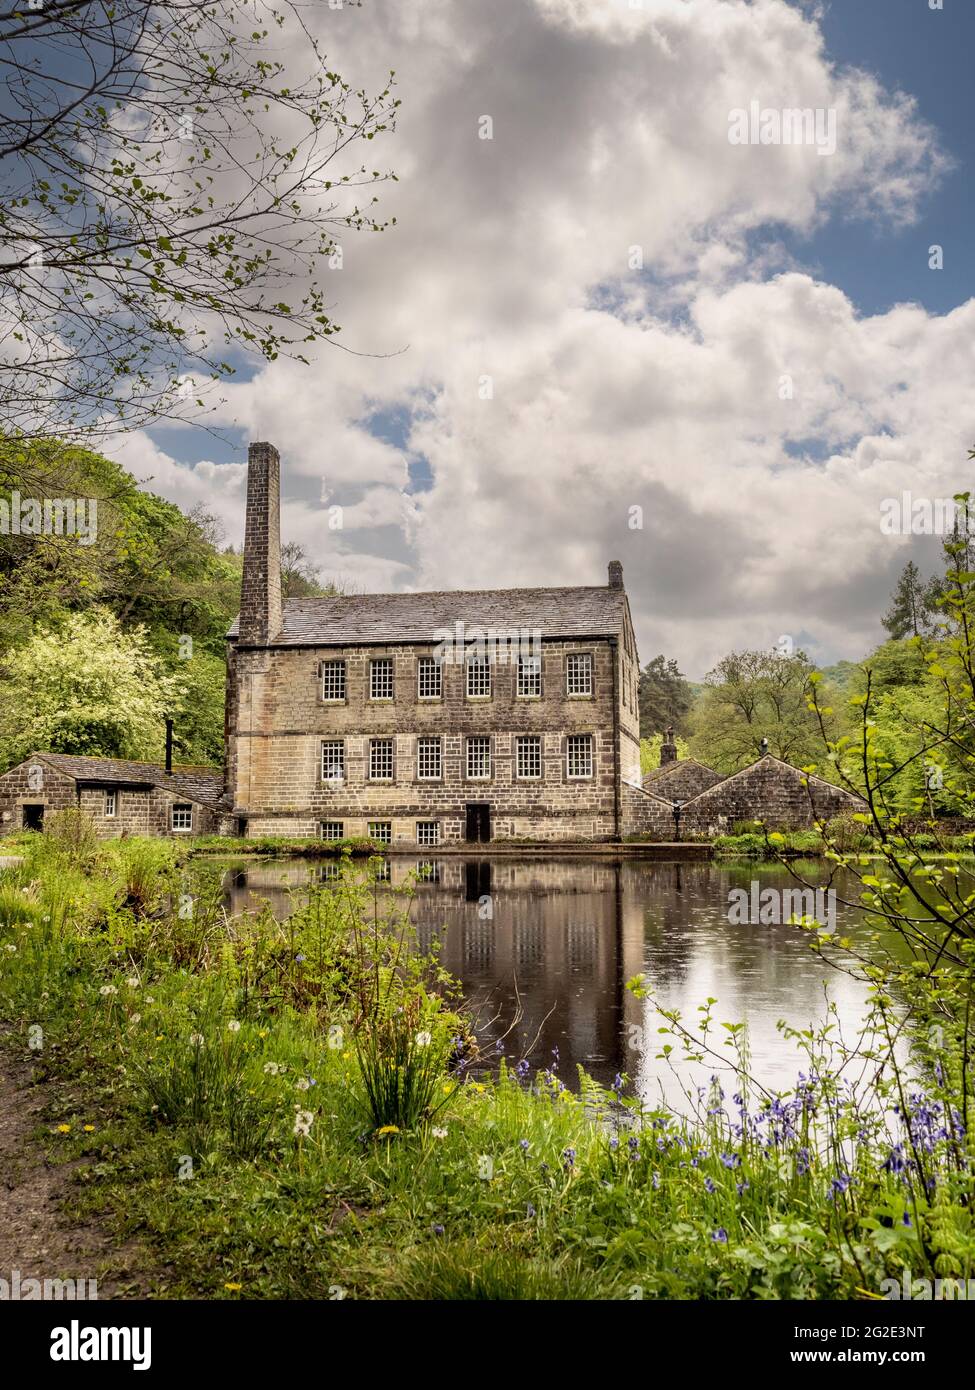 Gibson Mill, eine ehemalige Baumwollmühle in Hardcastle Crags, einem bewaldeten Pennine Valley in West Yorkshire, England. Jetzt eine Attraktion für Besucher außerhalb des Stromnetzes. Stockfoto